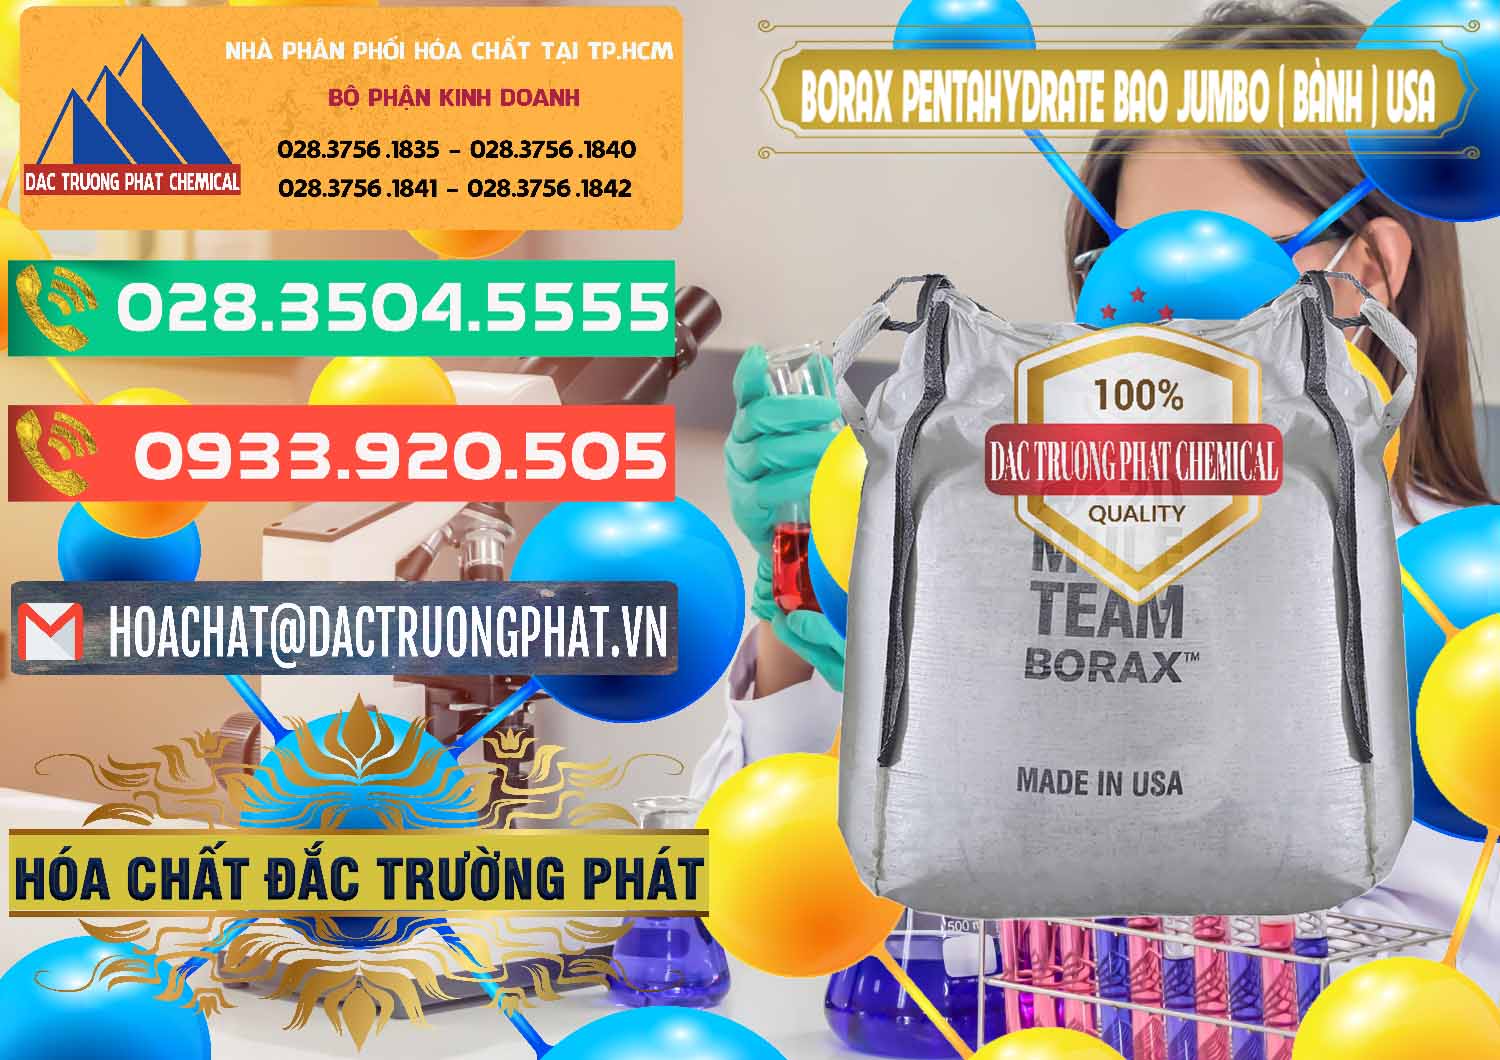 Đơn vị bán & cung ứng Borax Pentahydrate Bao Jumbo ( Bành ) Mule 20 Team Mỹ Usa - 0278 - Chuyên cung cấp ( bán ) hóa chất tại TP.HCM - congtyhoachat.com.vn